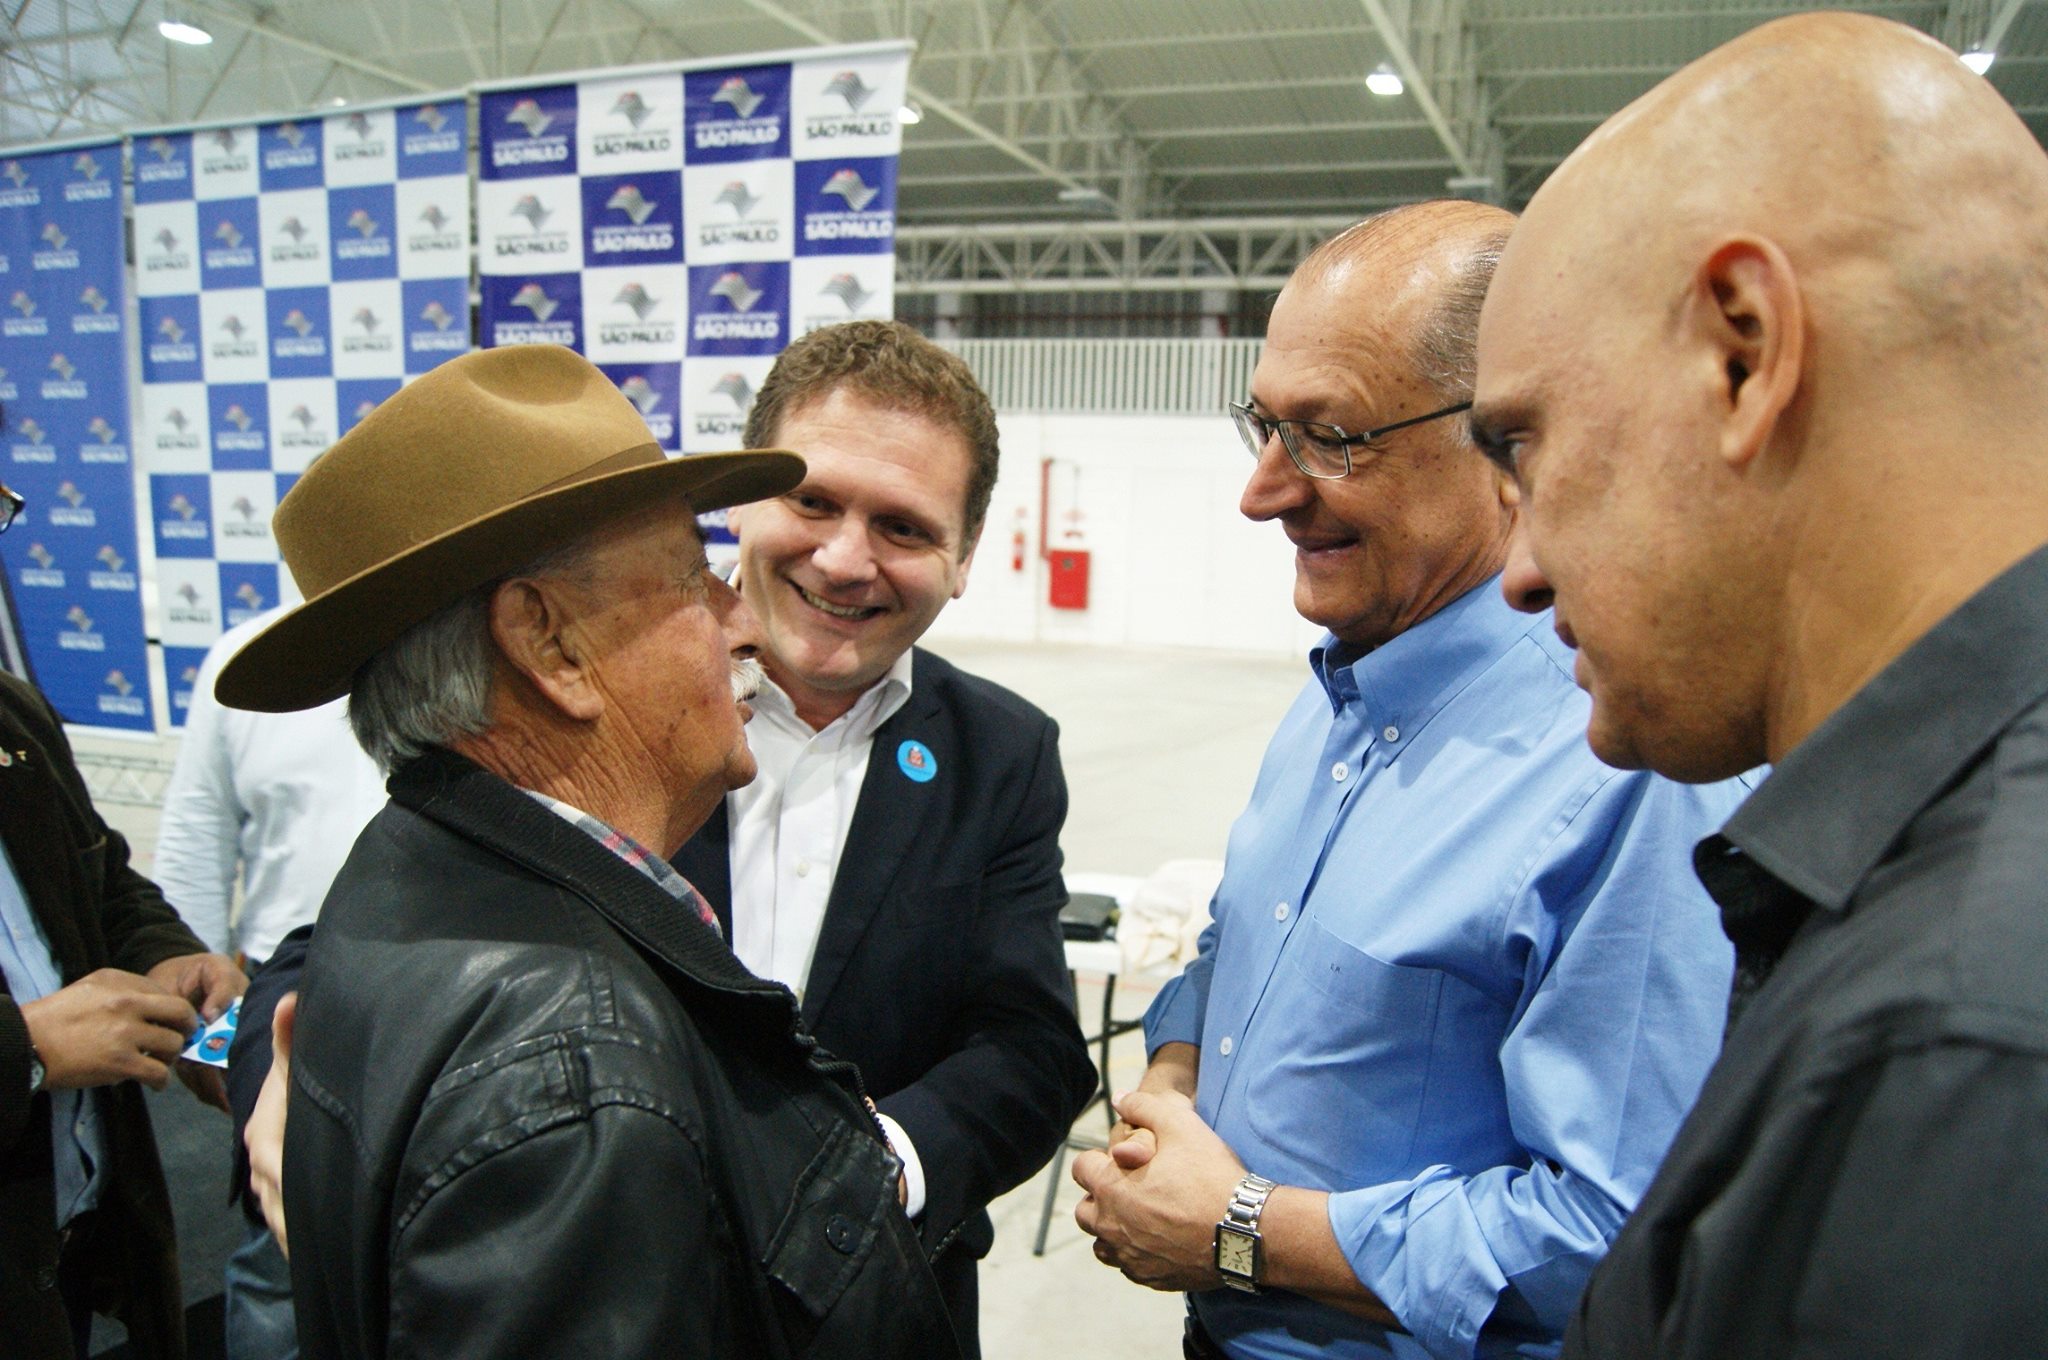 O senhor José de Oliveira, conversa com o governador Geraldo Alckmin, momentos antes do início da cerimônia.